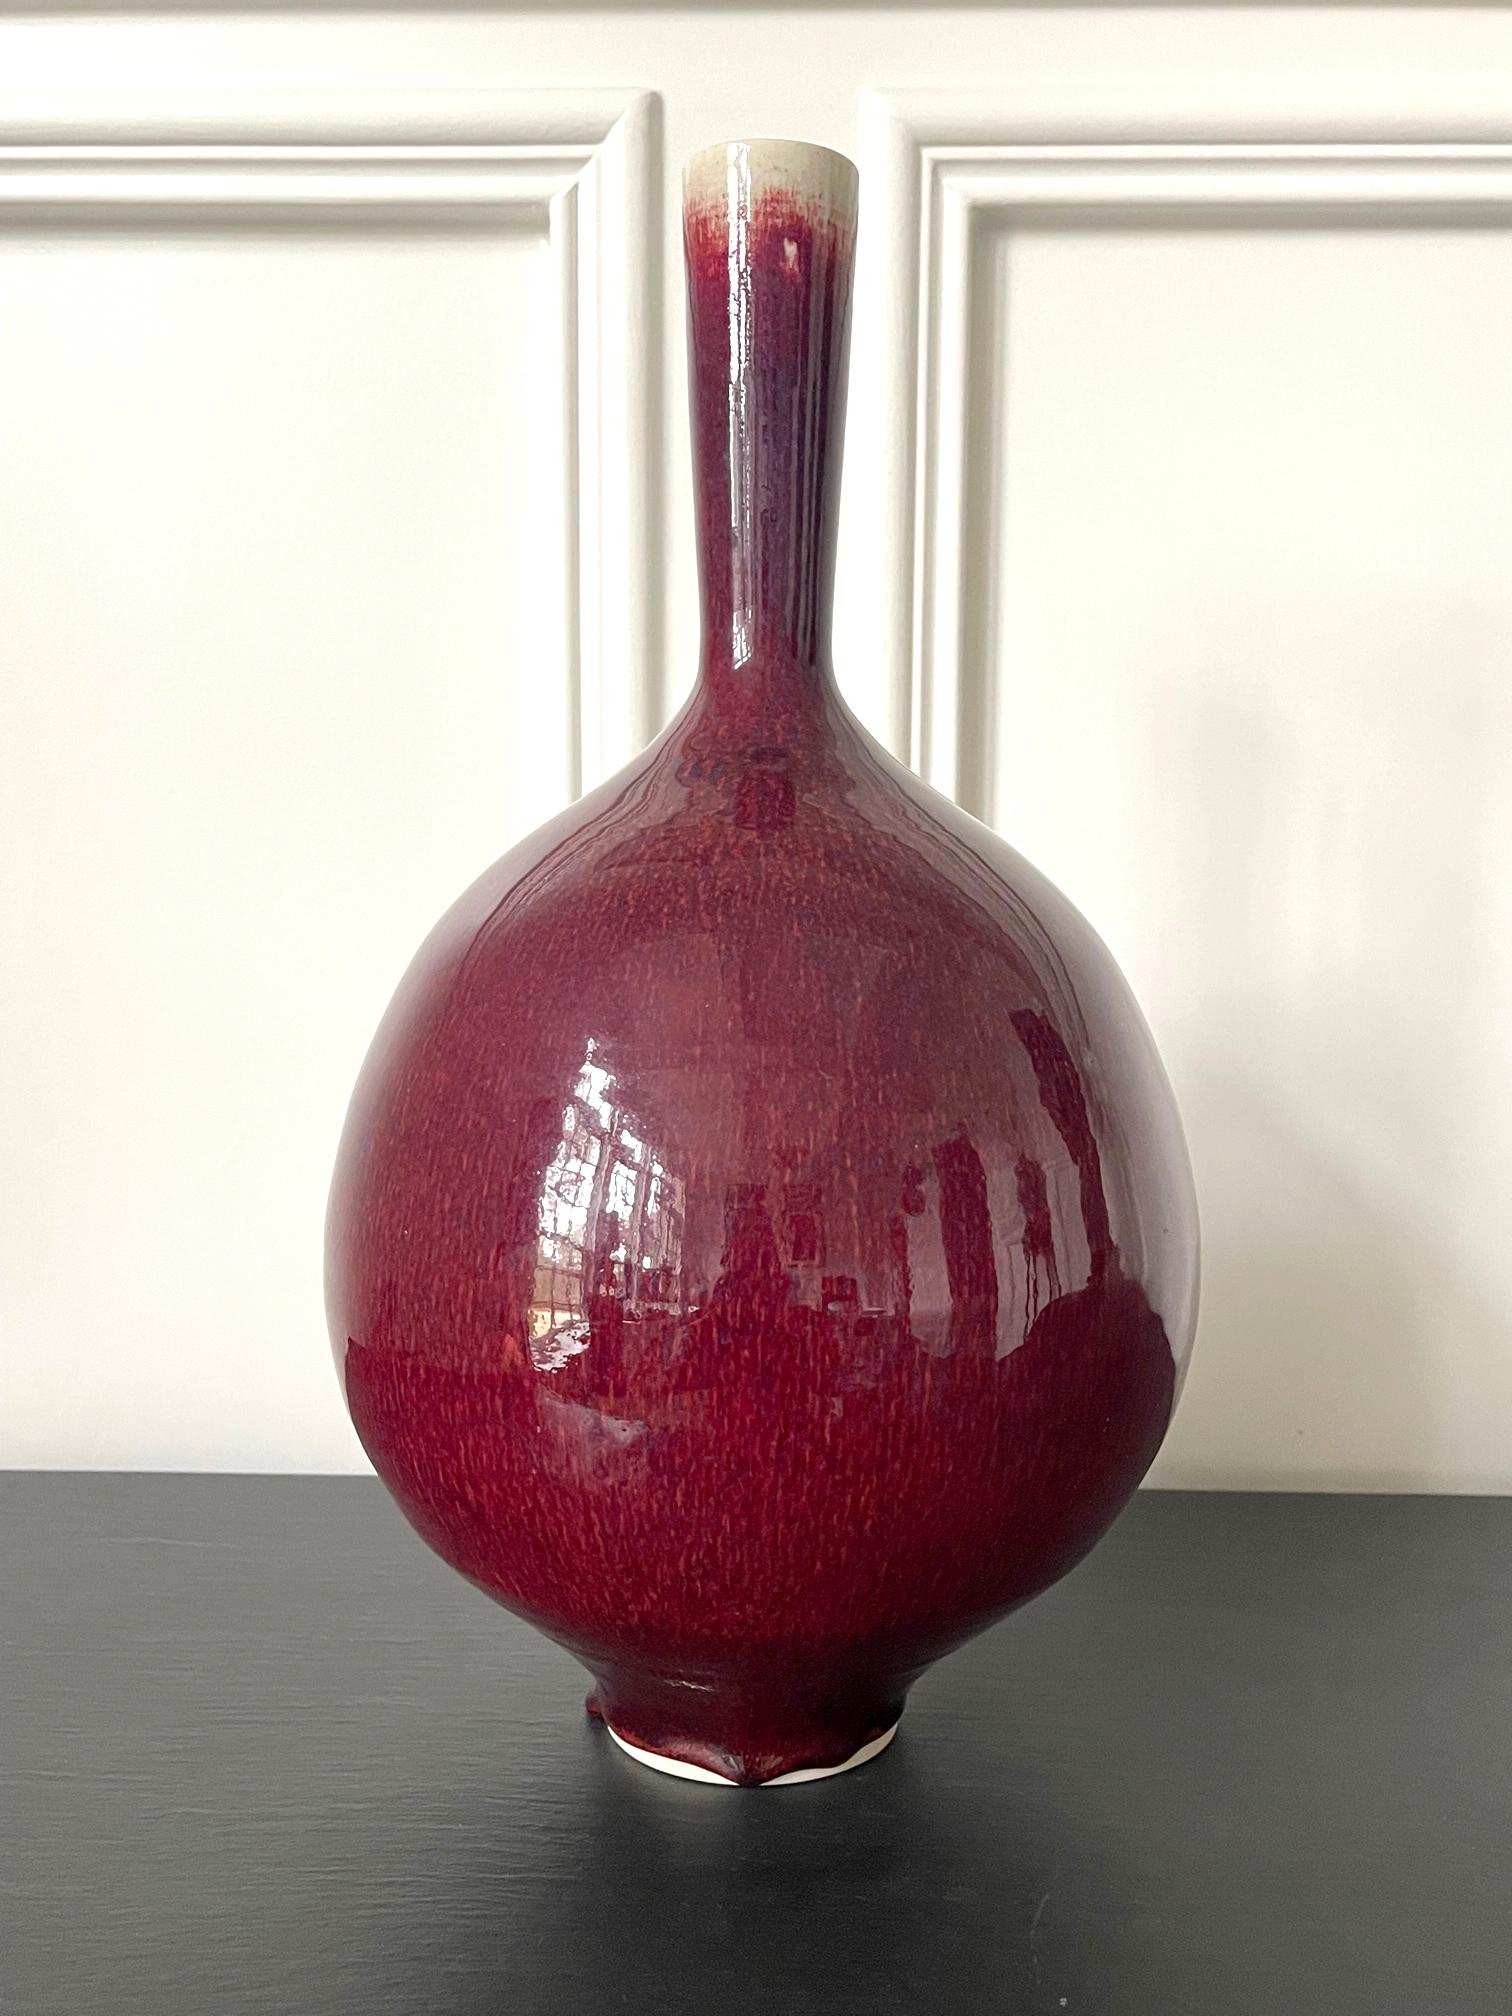 Un vase précoce en céramique à long col, avec une glaçure rouge cuivre brillante, réalisé par le moine potier bénédictin Frère Thomas Bezanson (1929-2007). La forme minimaliste et harmonieuse, avec un corps bulbeux, est indubitablement inspirée de